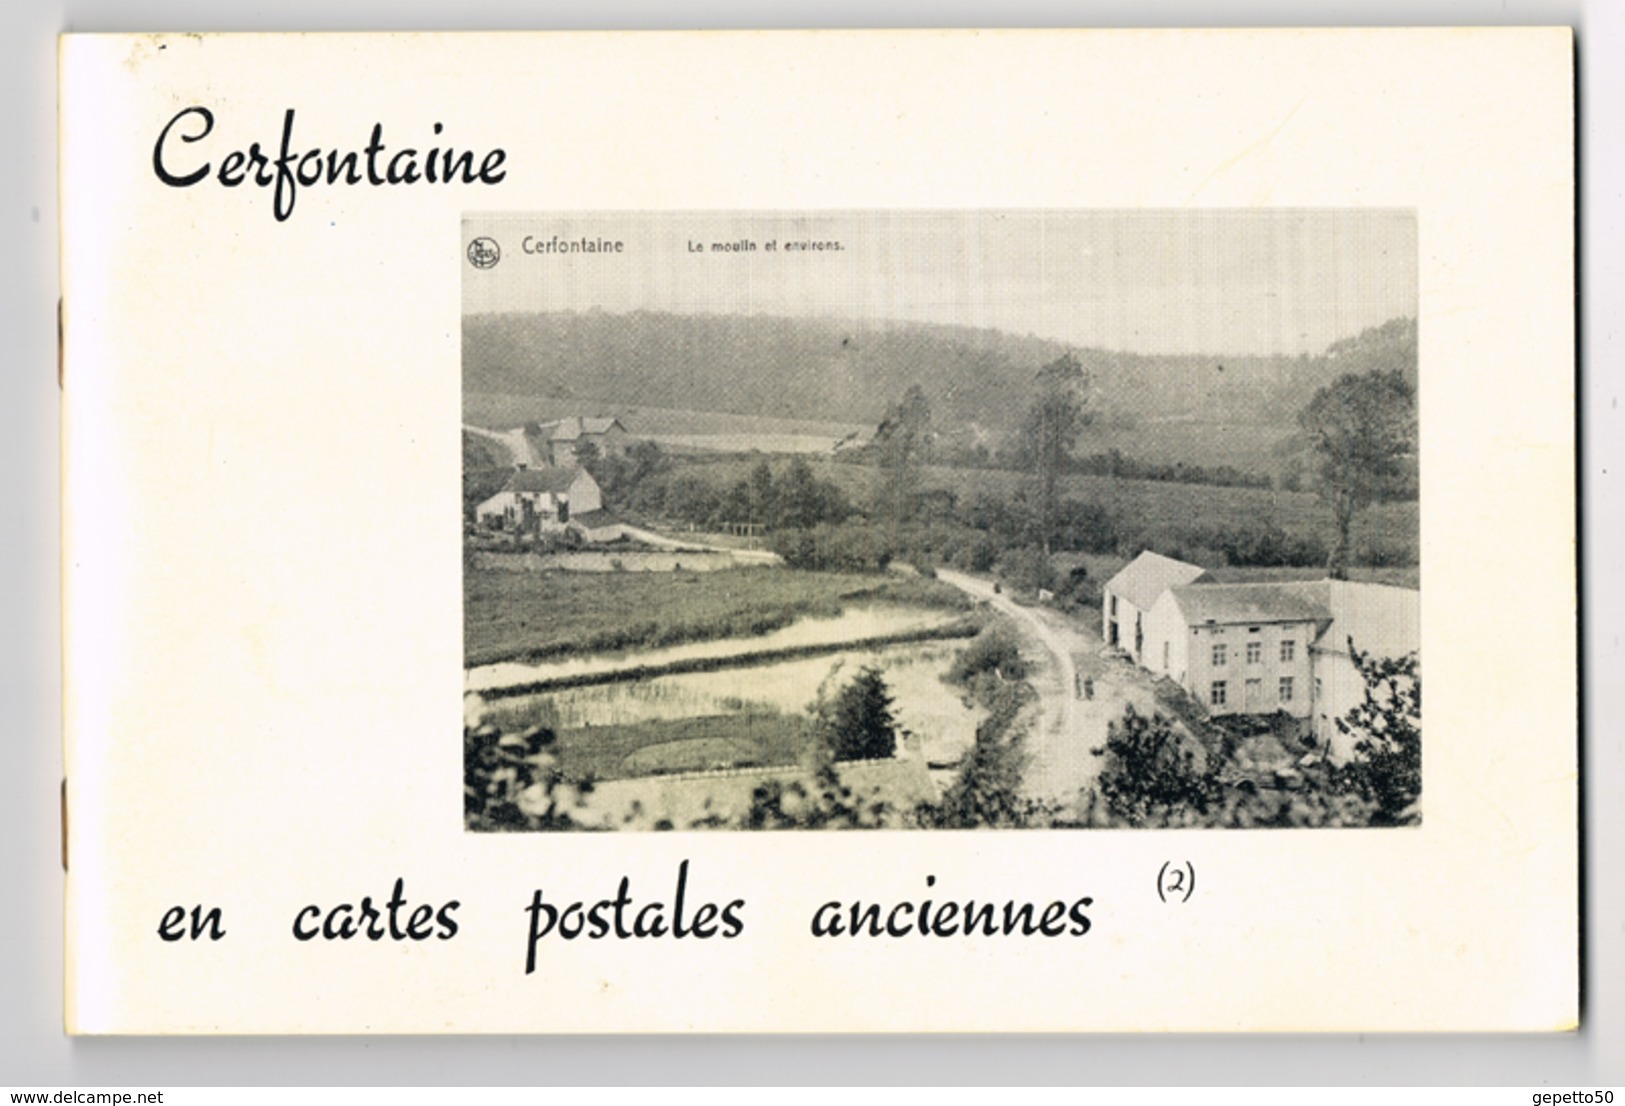 Cerfontaine Livre (n°2) De CP AnciennesEd Musée De Cerfontaine Repro De 70 Cartes - Bücher & Kataloge